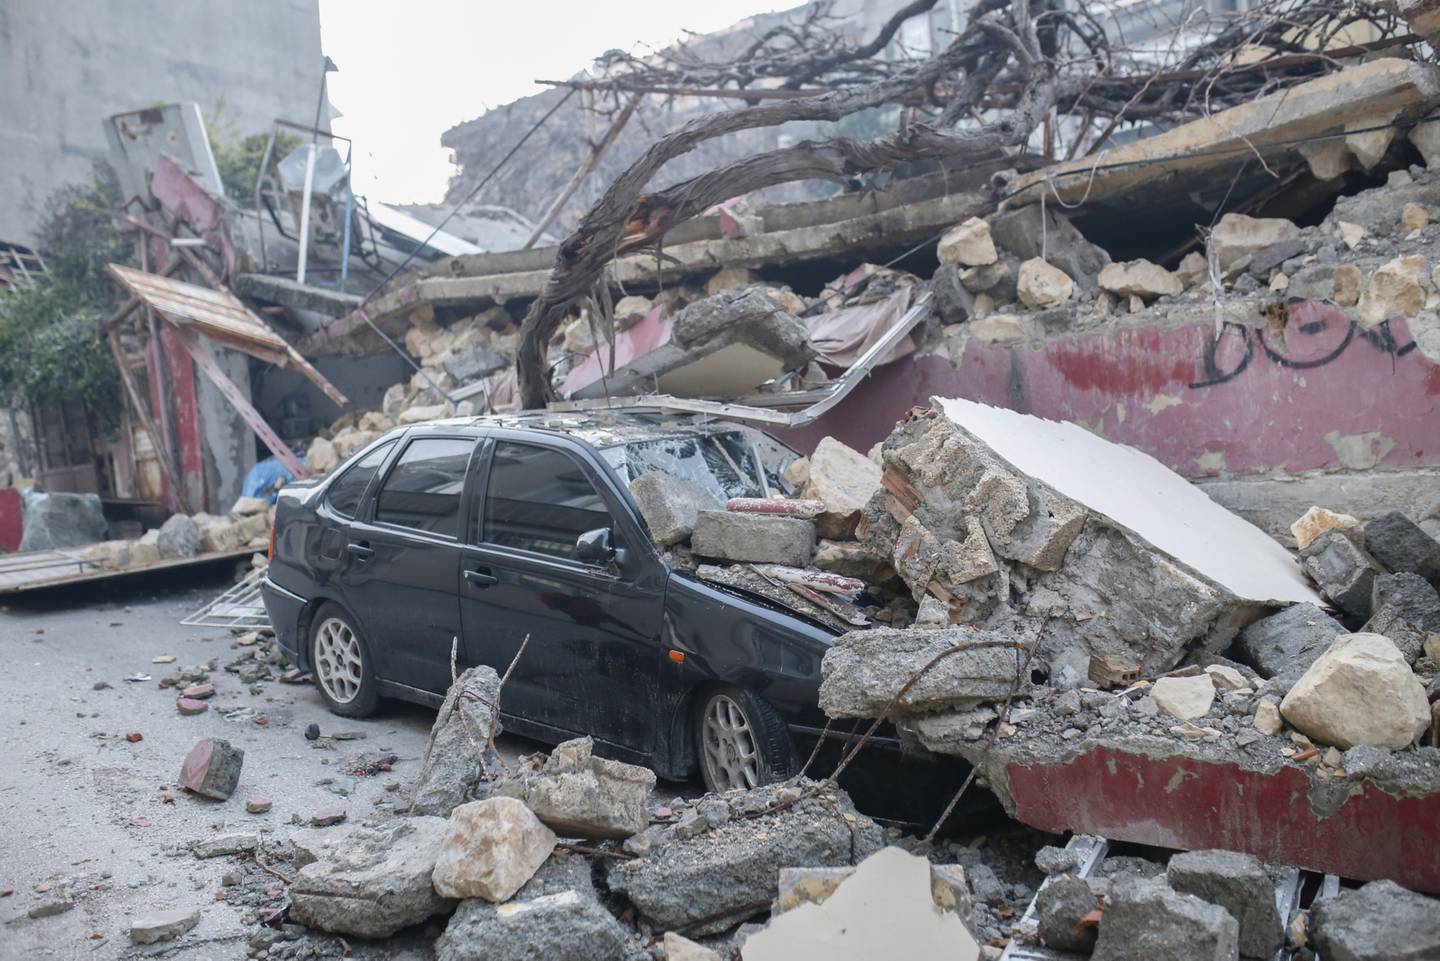 Escombros de un edificio destruido cubren un automóvil en la calle en Hatay, Turquía, el miércoles 8 de febrero de 2023. El gobierno turco está desbordado por la magnitud de los daños en las infraestructuras, los problemas logísticos y la ayuda necesaria para asistir a los 13,4 millones de personas que viven en la zona del desastre. Fotógrafo: Cansu Yildirann/Bloomberg